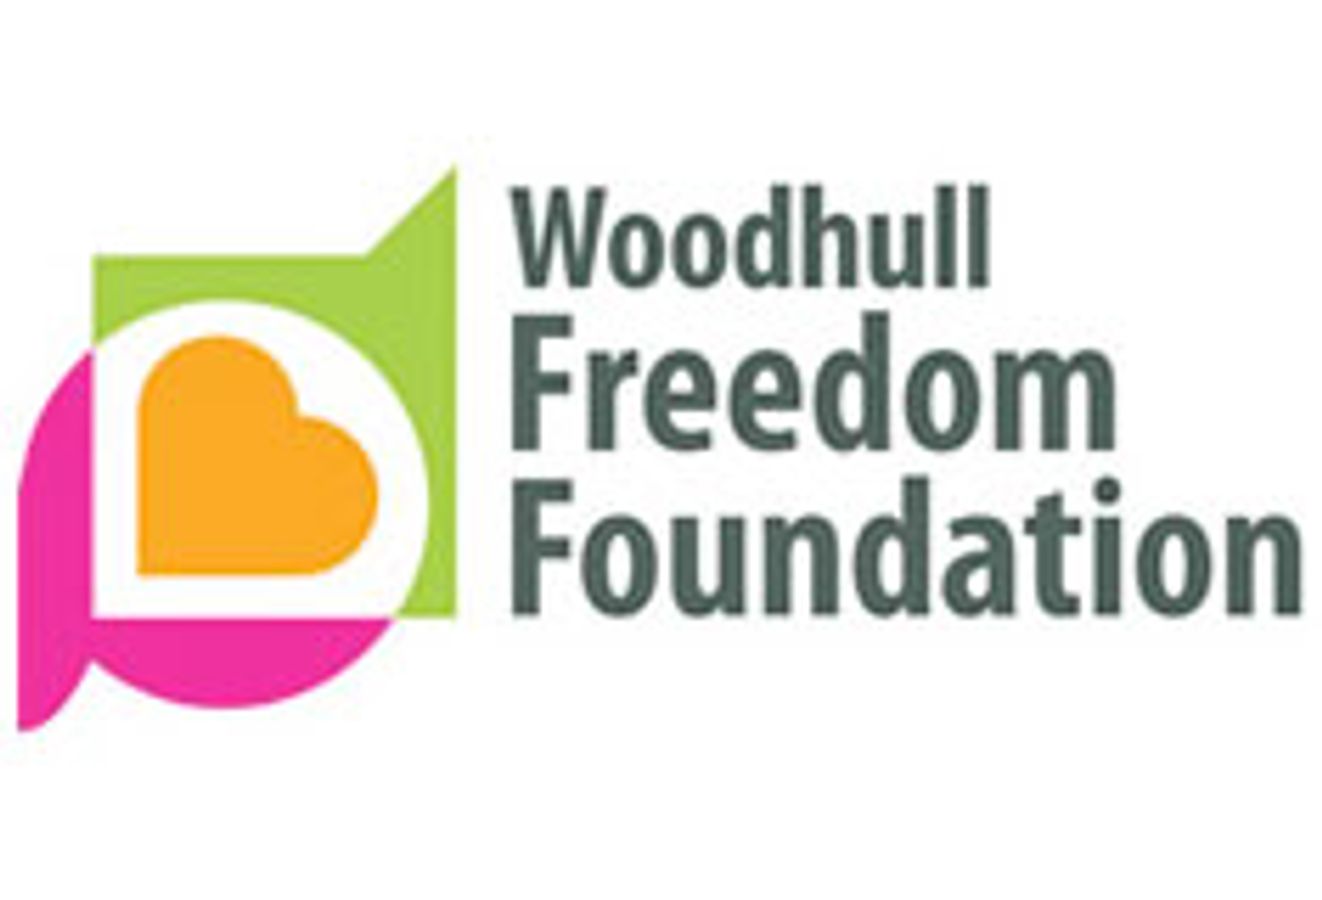 Woodhull Freedom Foundation